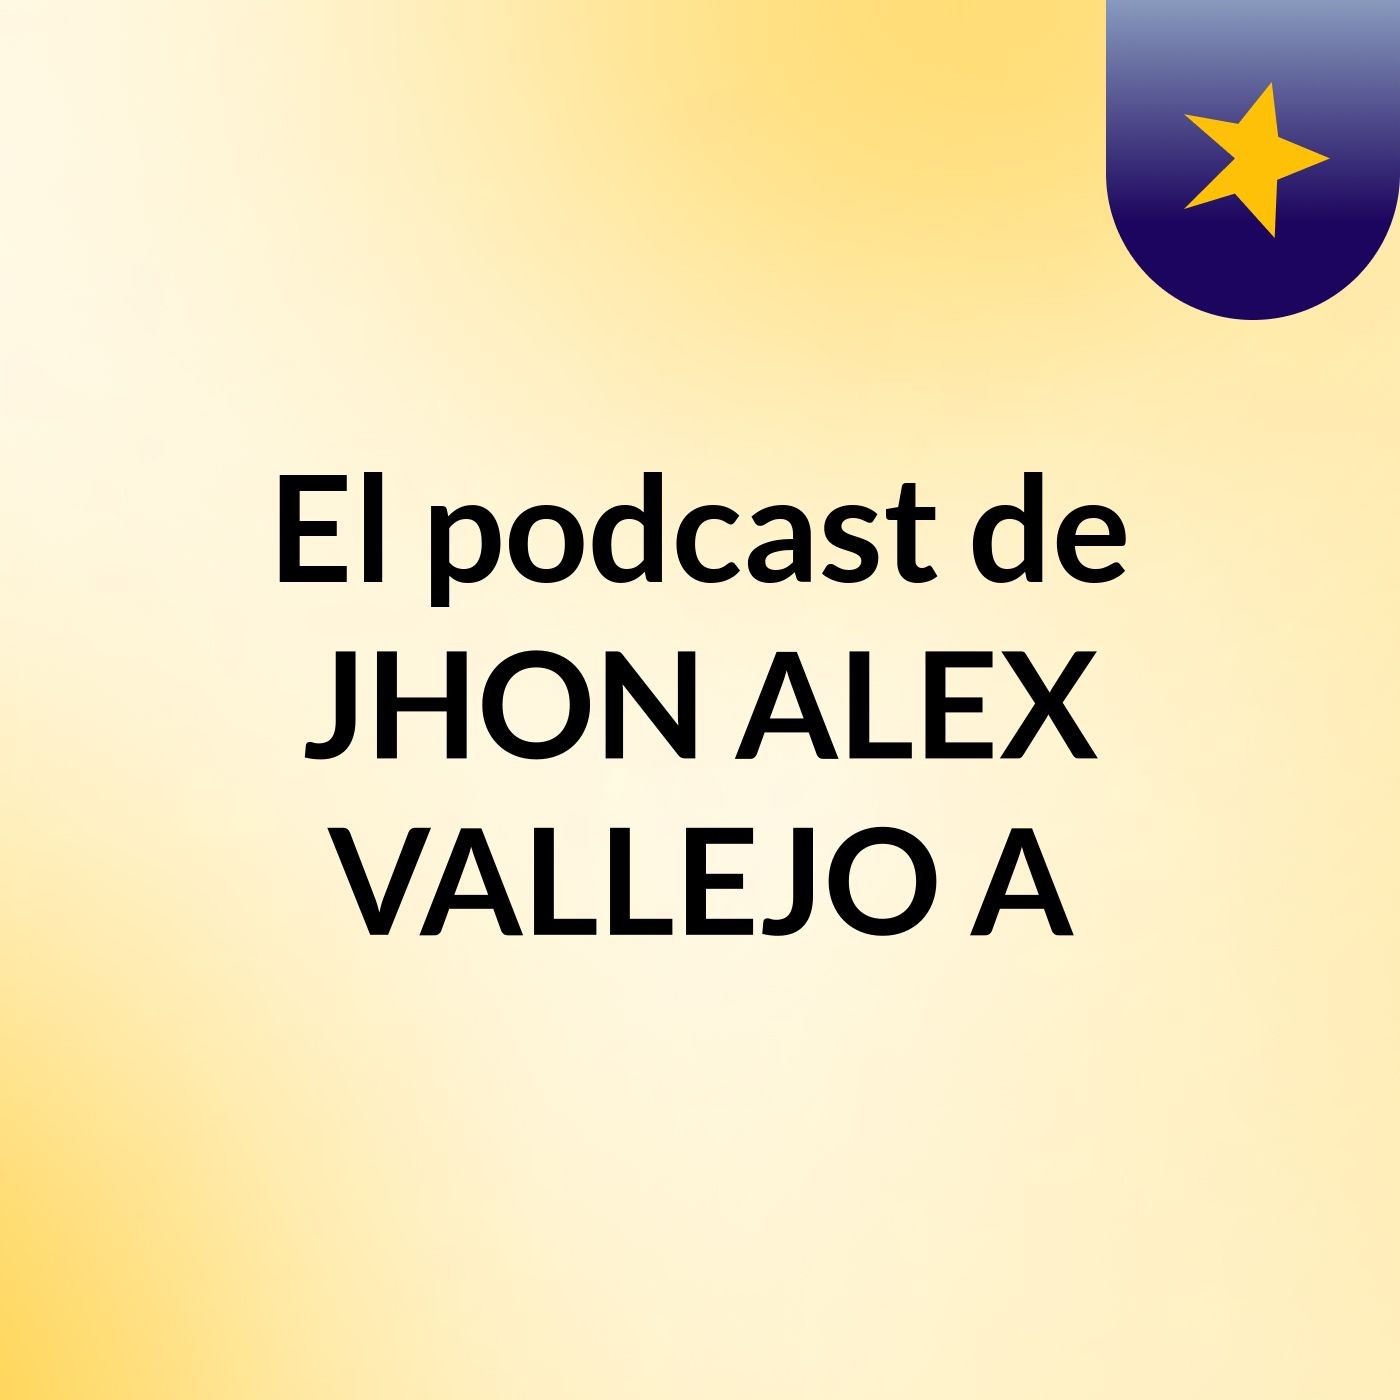 Episodio 20 - El podcast de JHON ALEX VALLEJO A